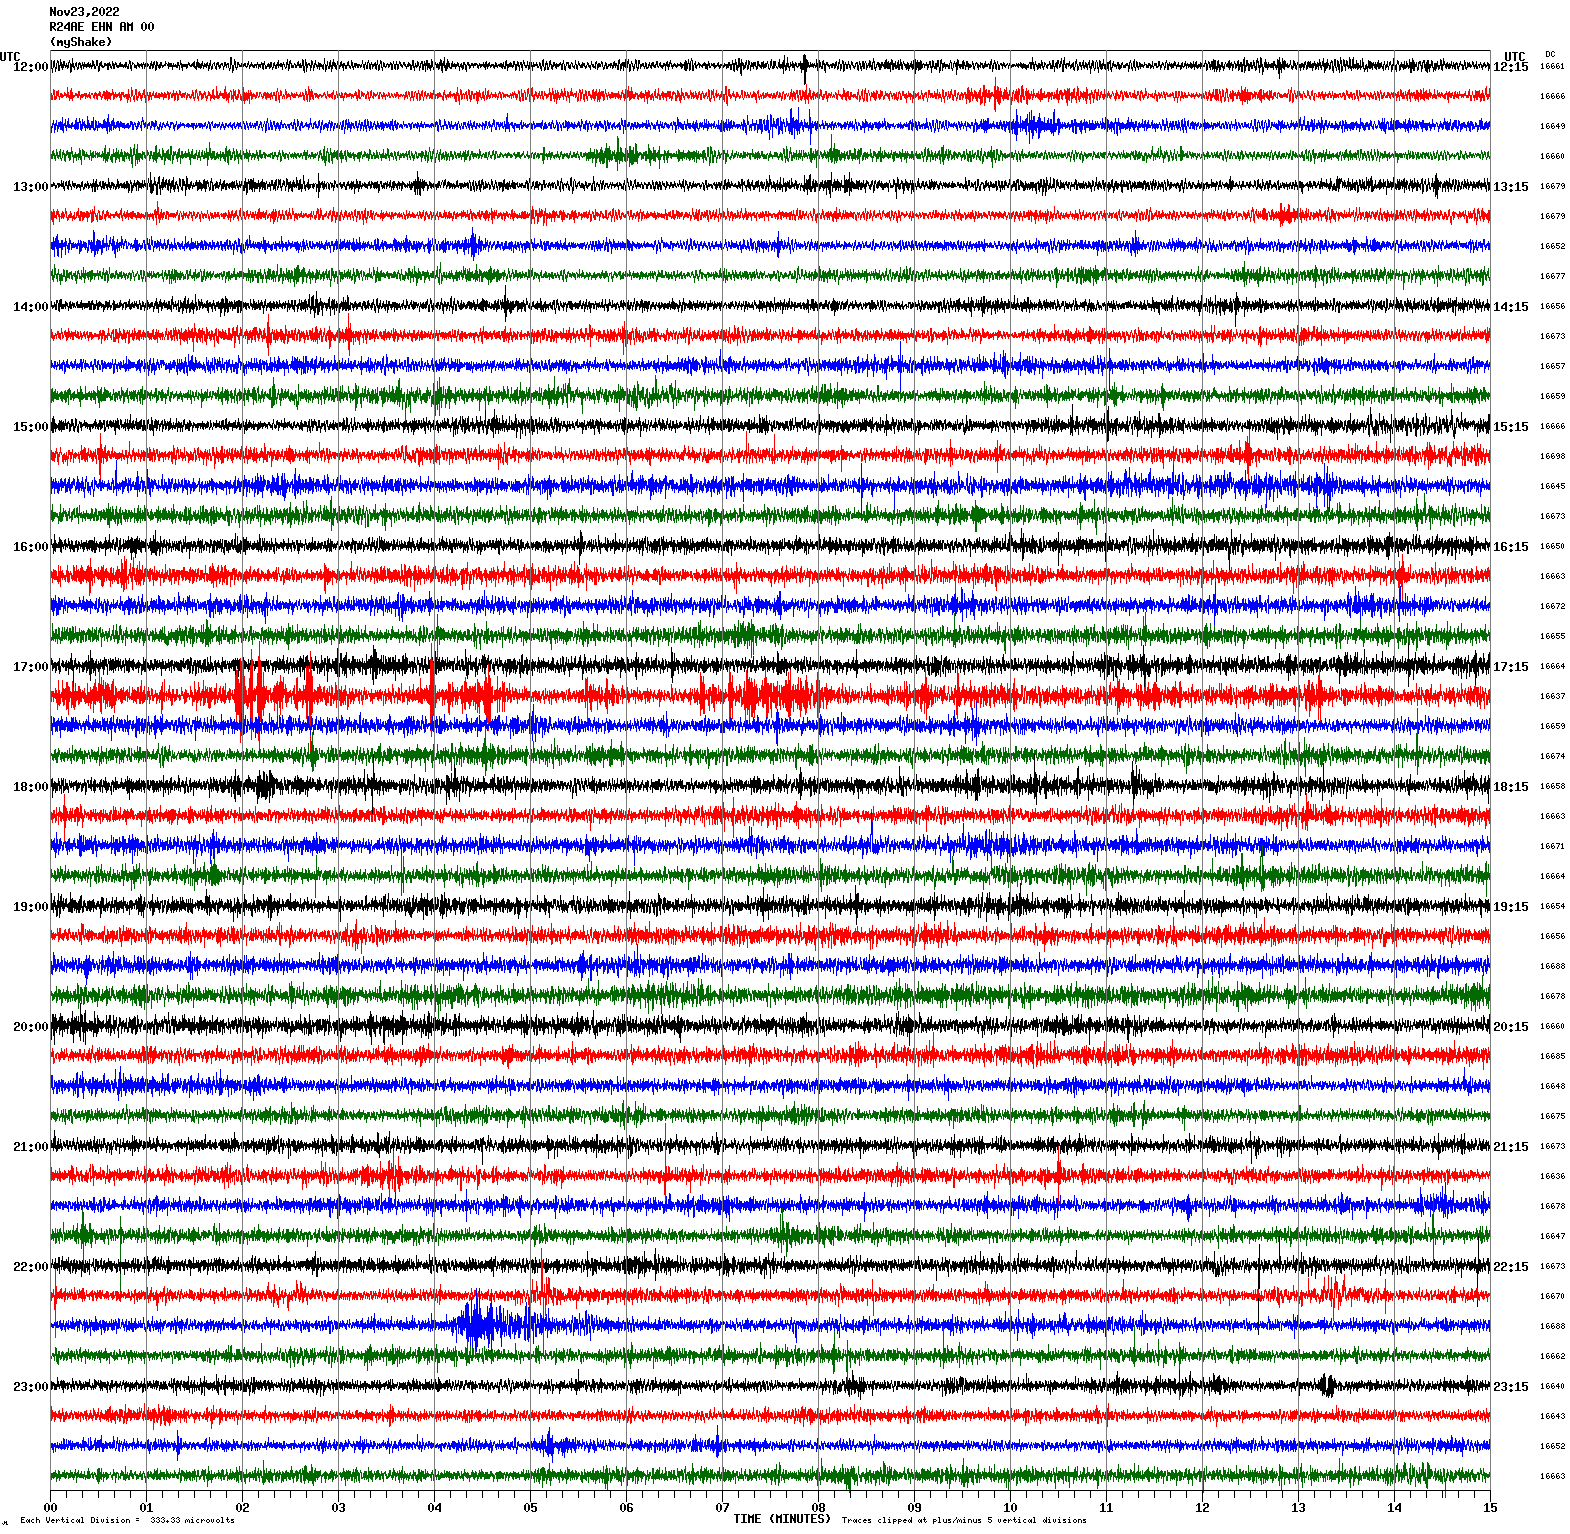 /seismic-data/R24AN/R24AE_EHN_AM_00.2022112312.gif